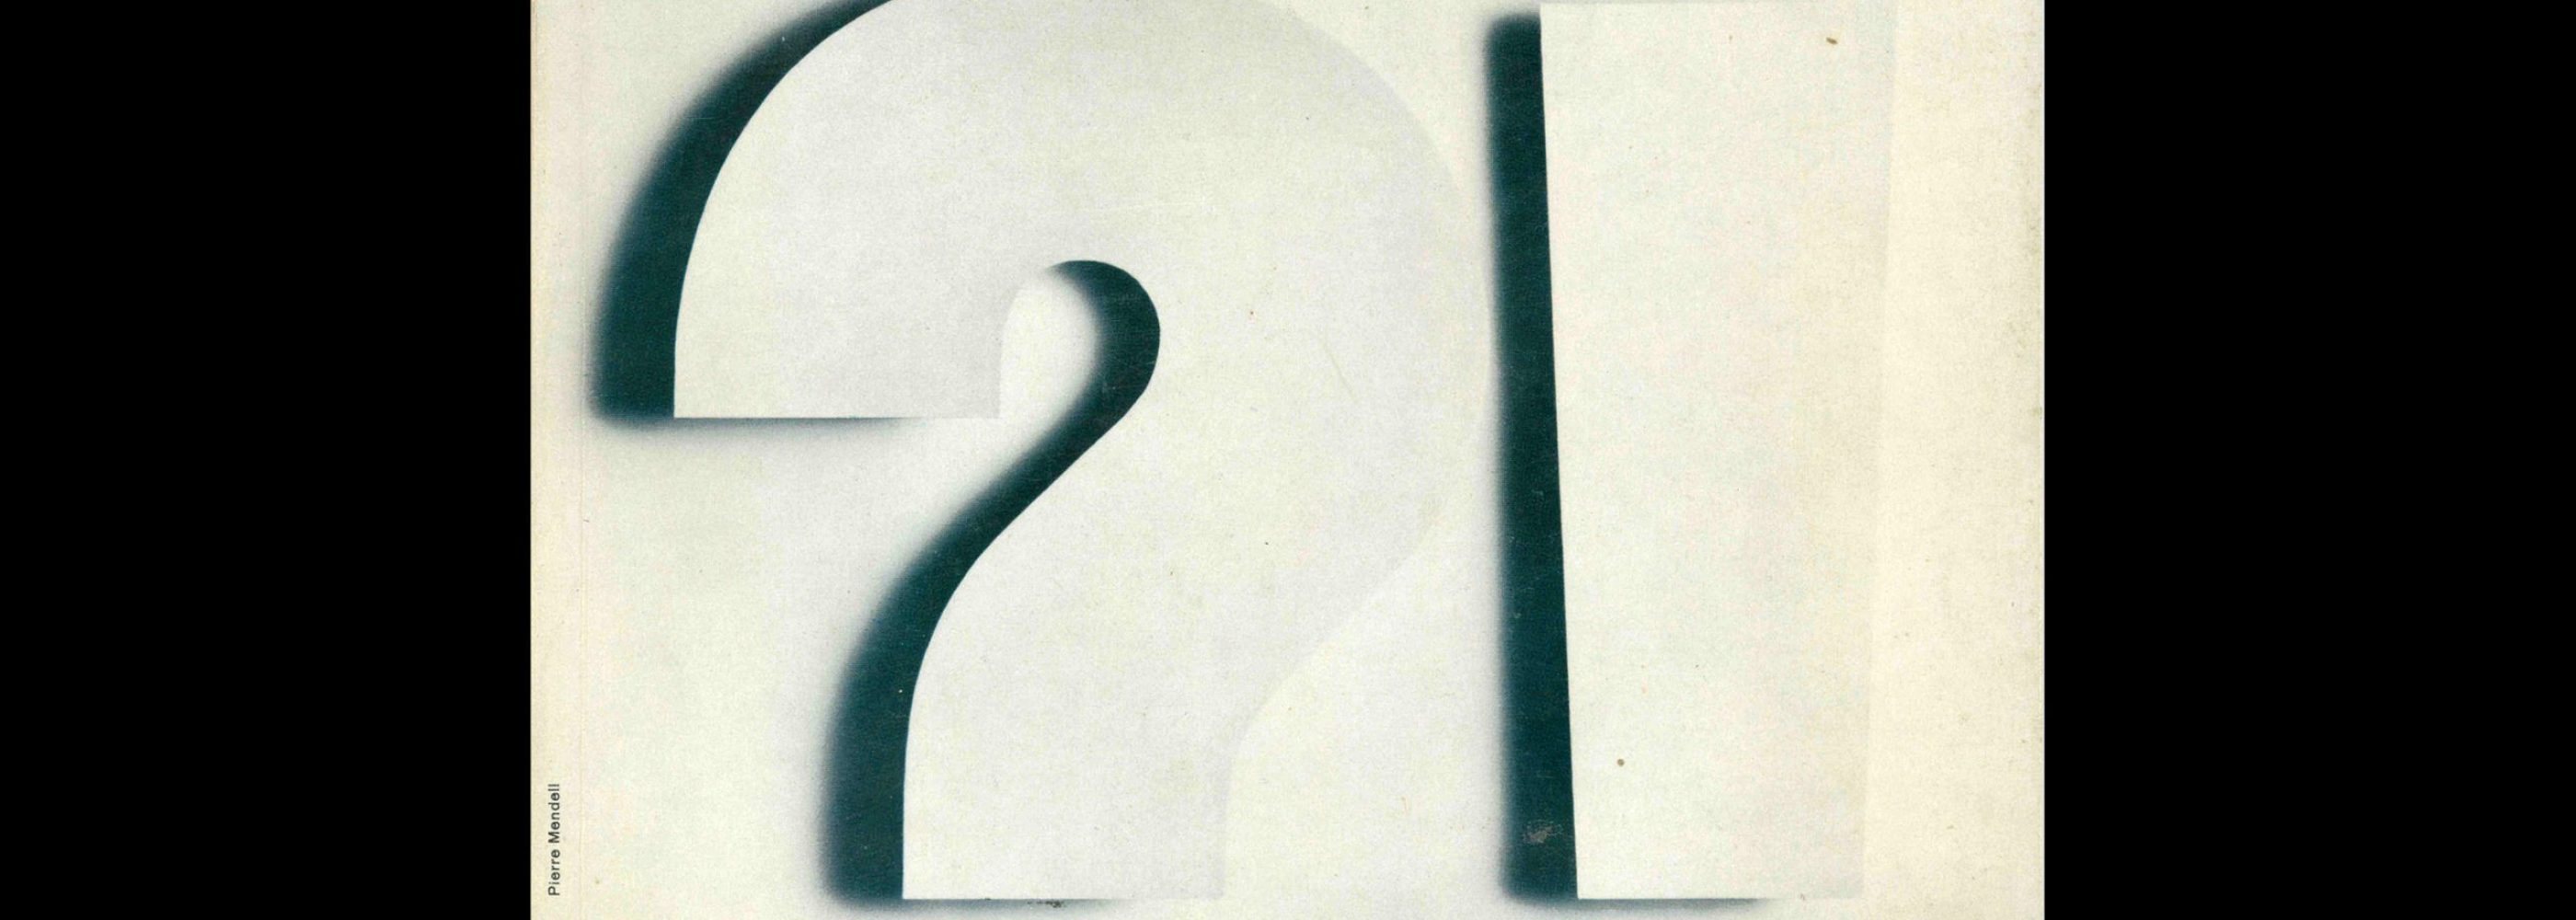 Gebrauchsgraphik, 5, 1969. Cover design by Pierre Mendell